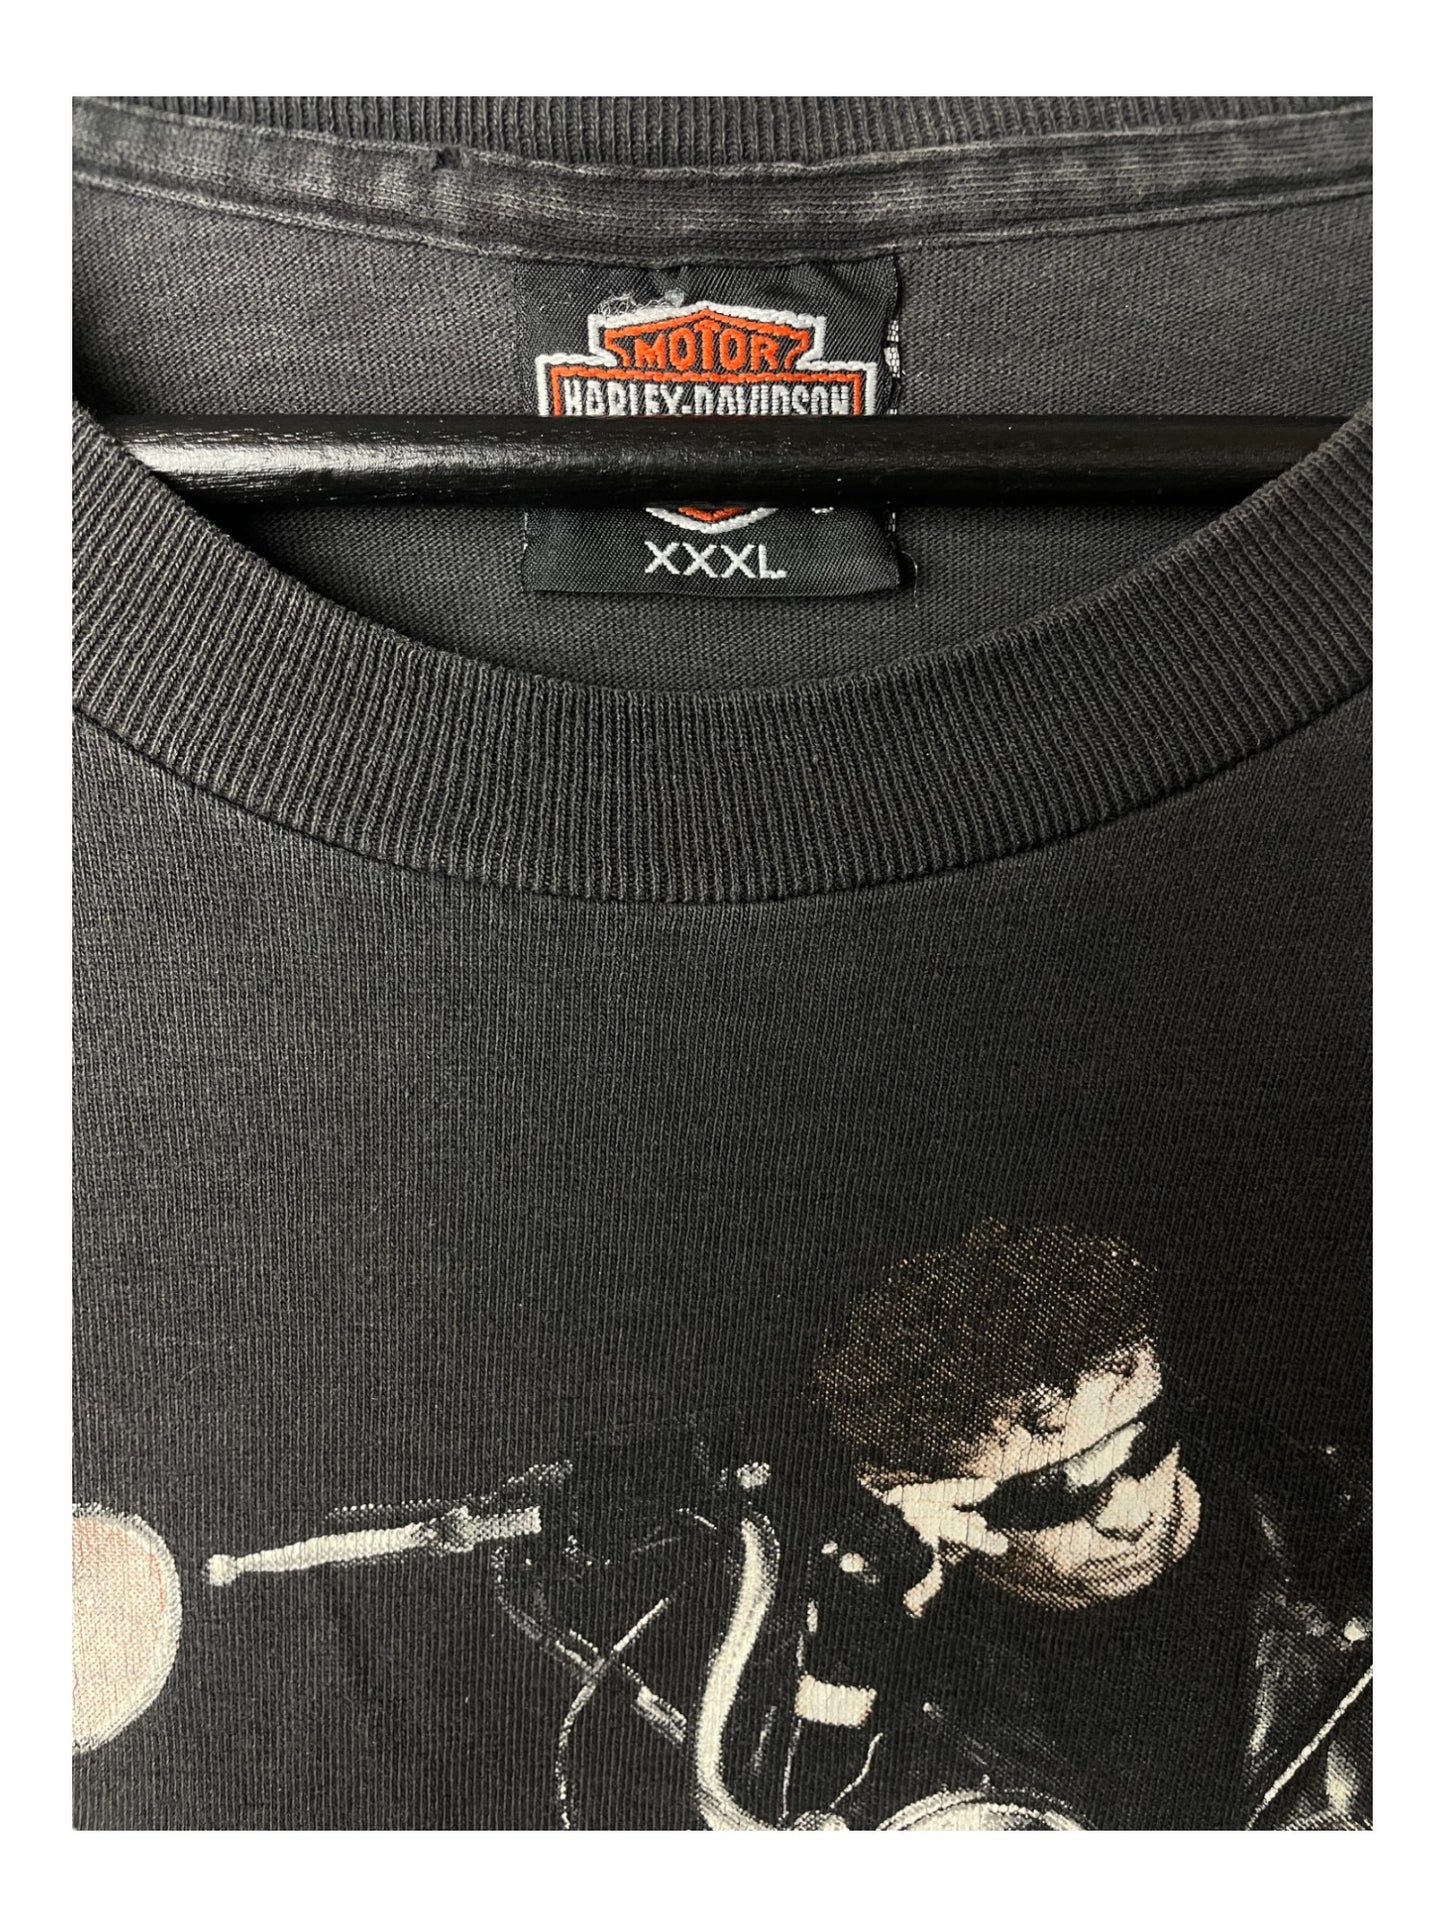 T-Shirt Harley-Davidson Salinas California (Boxy Fit)